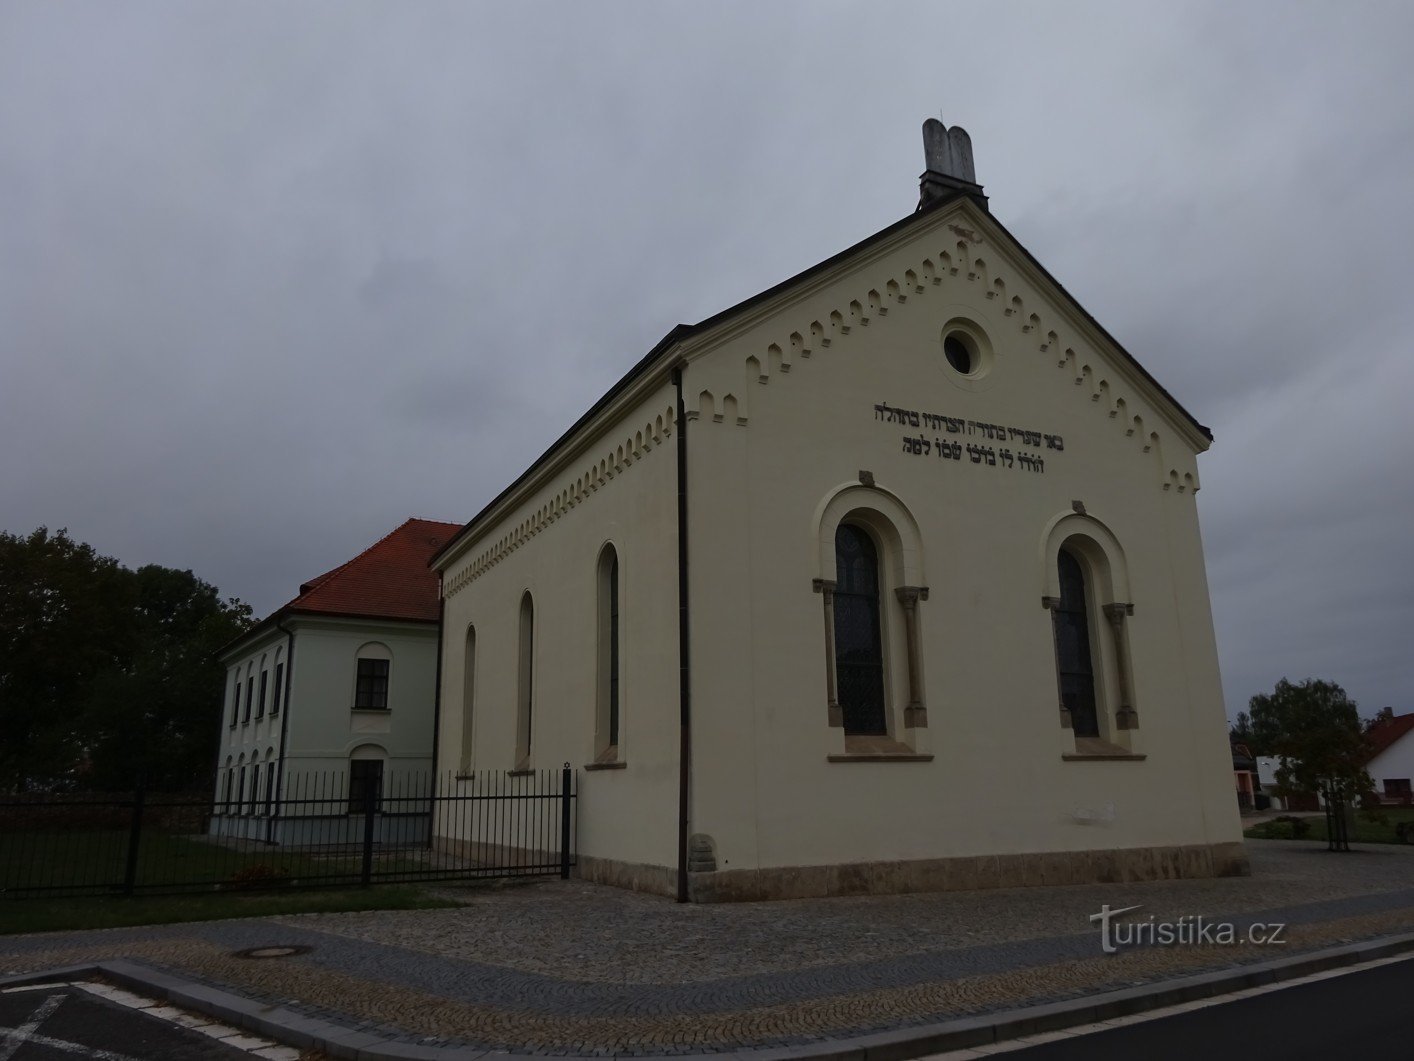 Heřmanův Městec e una sinagoga ebraica con una scuola